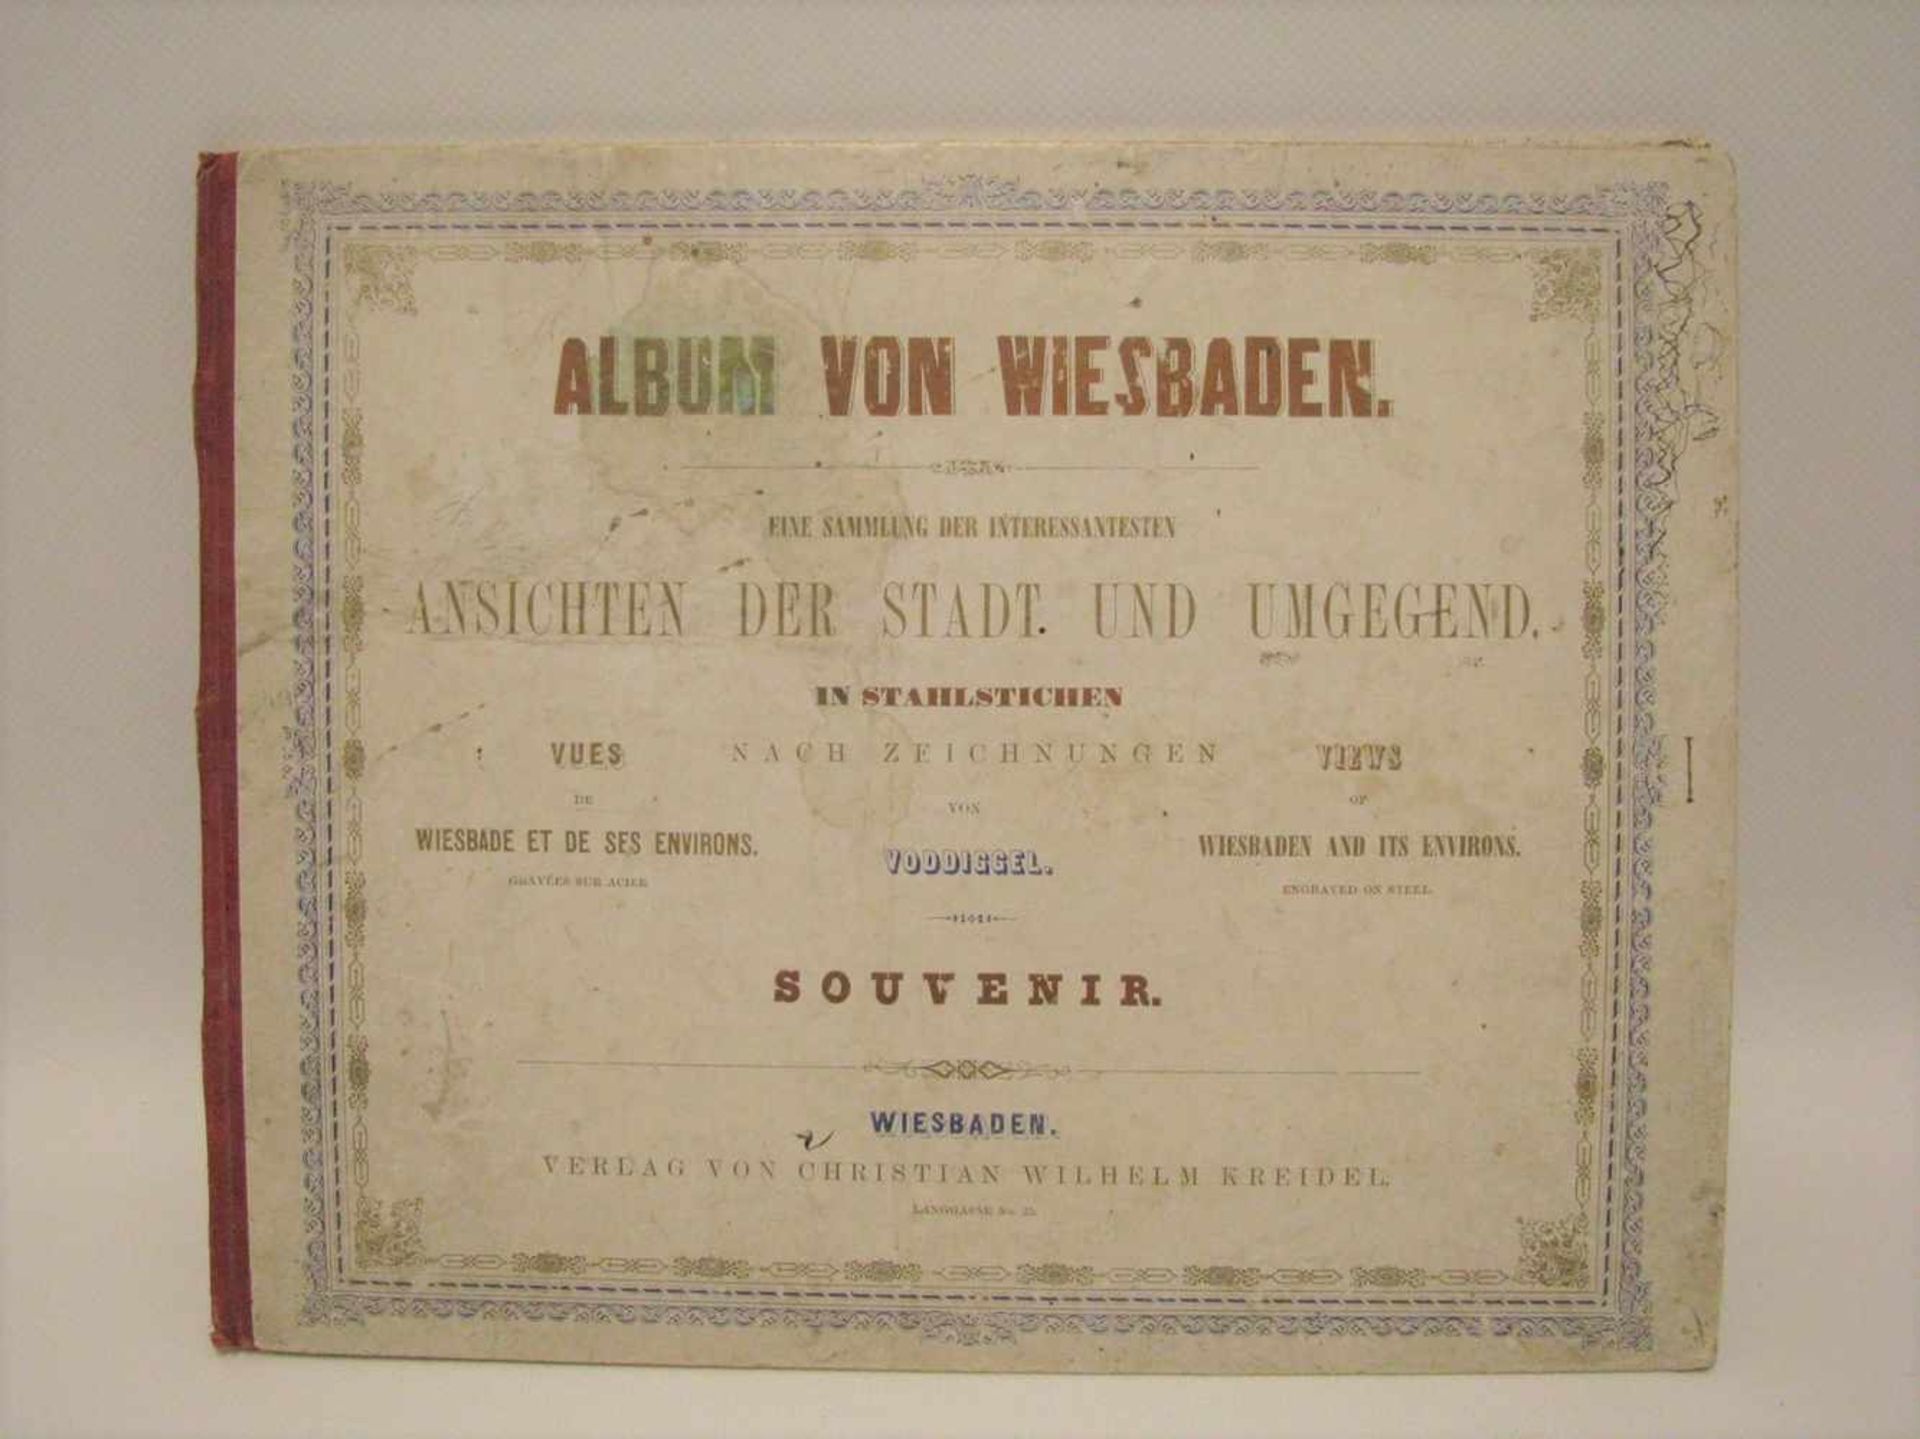 Album von Wiesbaden mit 9 Kupferstichen, 23 x 29 cm.